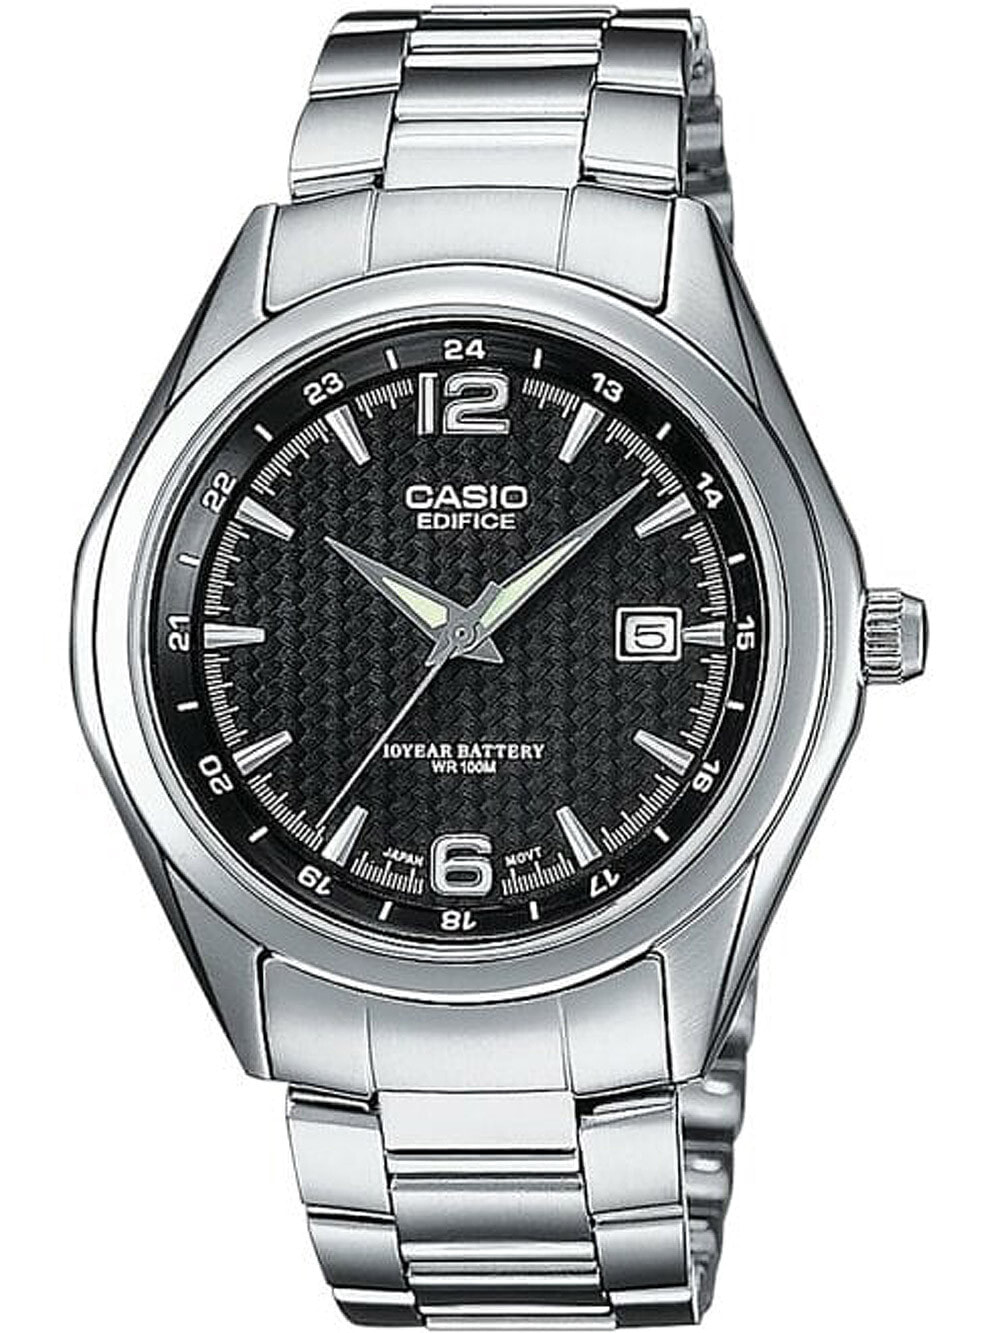 Мужские наручные часы с серебряным браслетом Casio EF-121D-1AVEG Edifice mens 40mm 10ATM